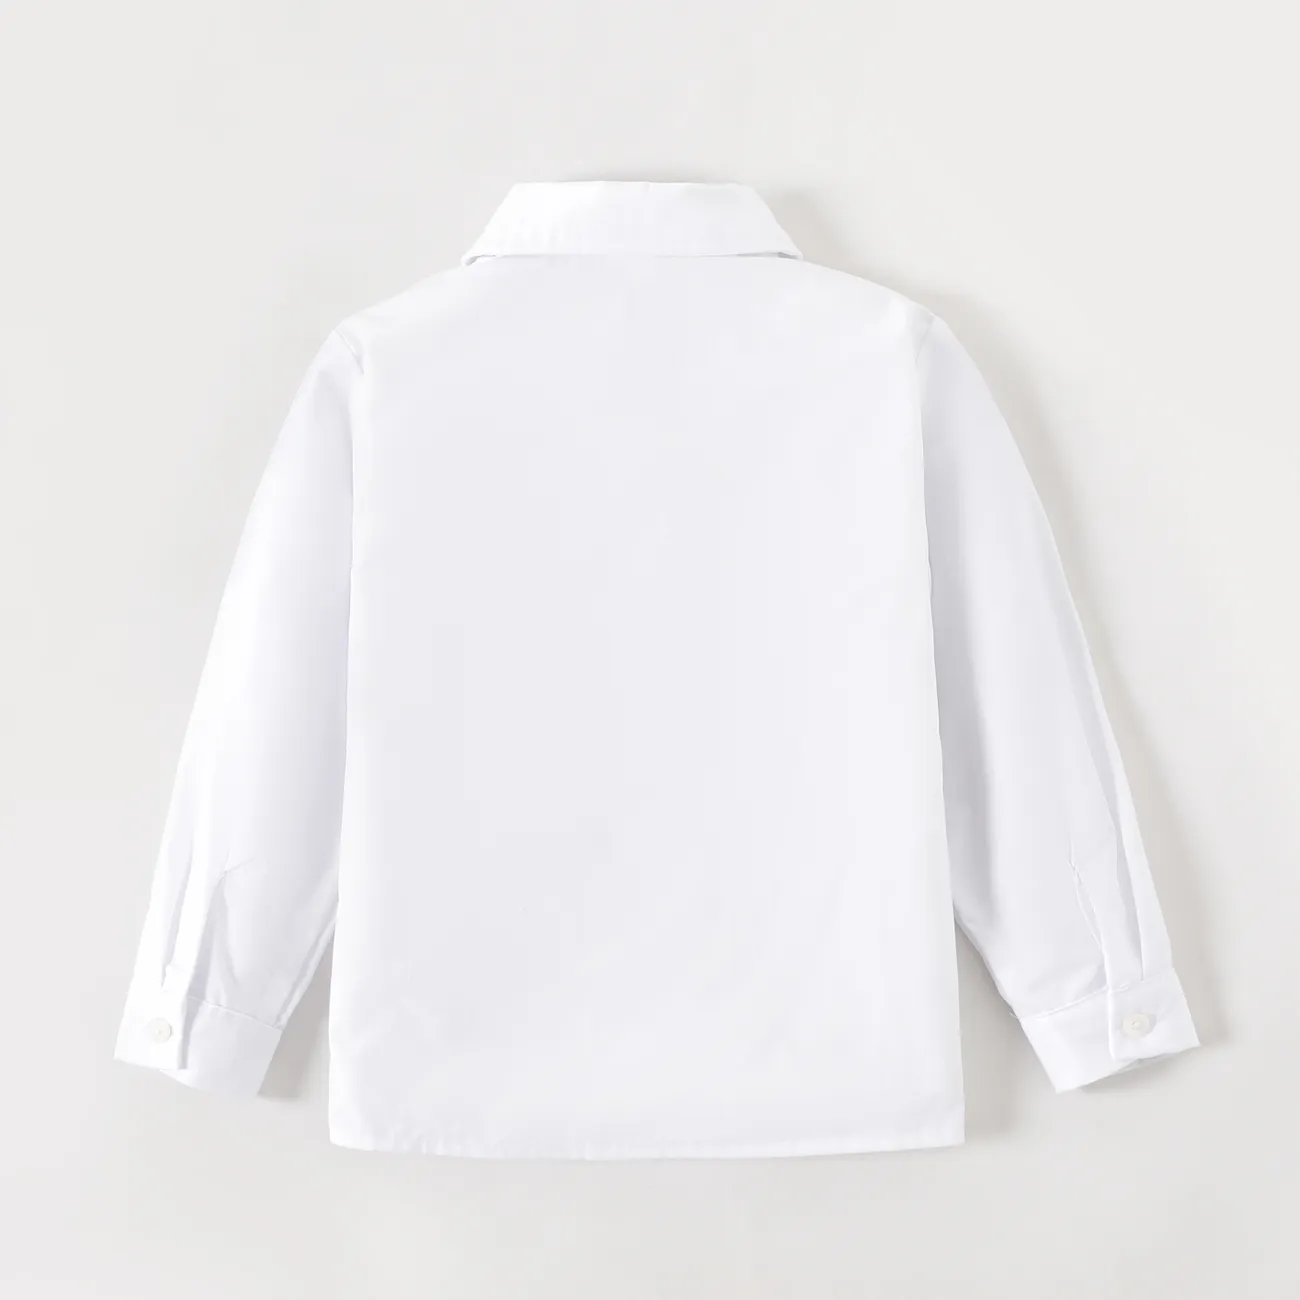 طفل صغير فتى / فتاة الزي المدرسي قميص طويل الأكمام الصلبة أبيض big image 1